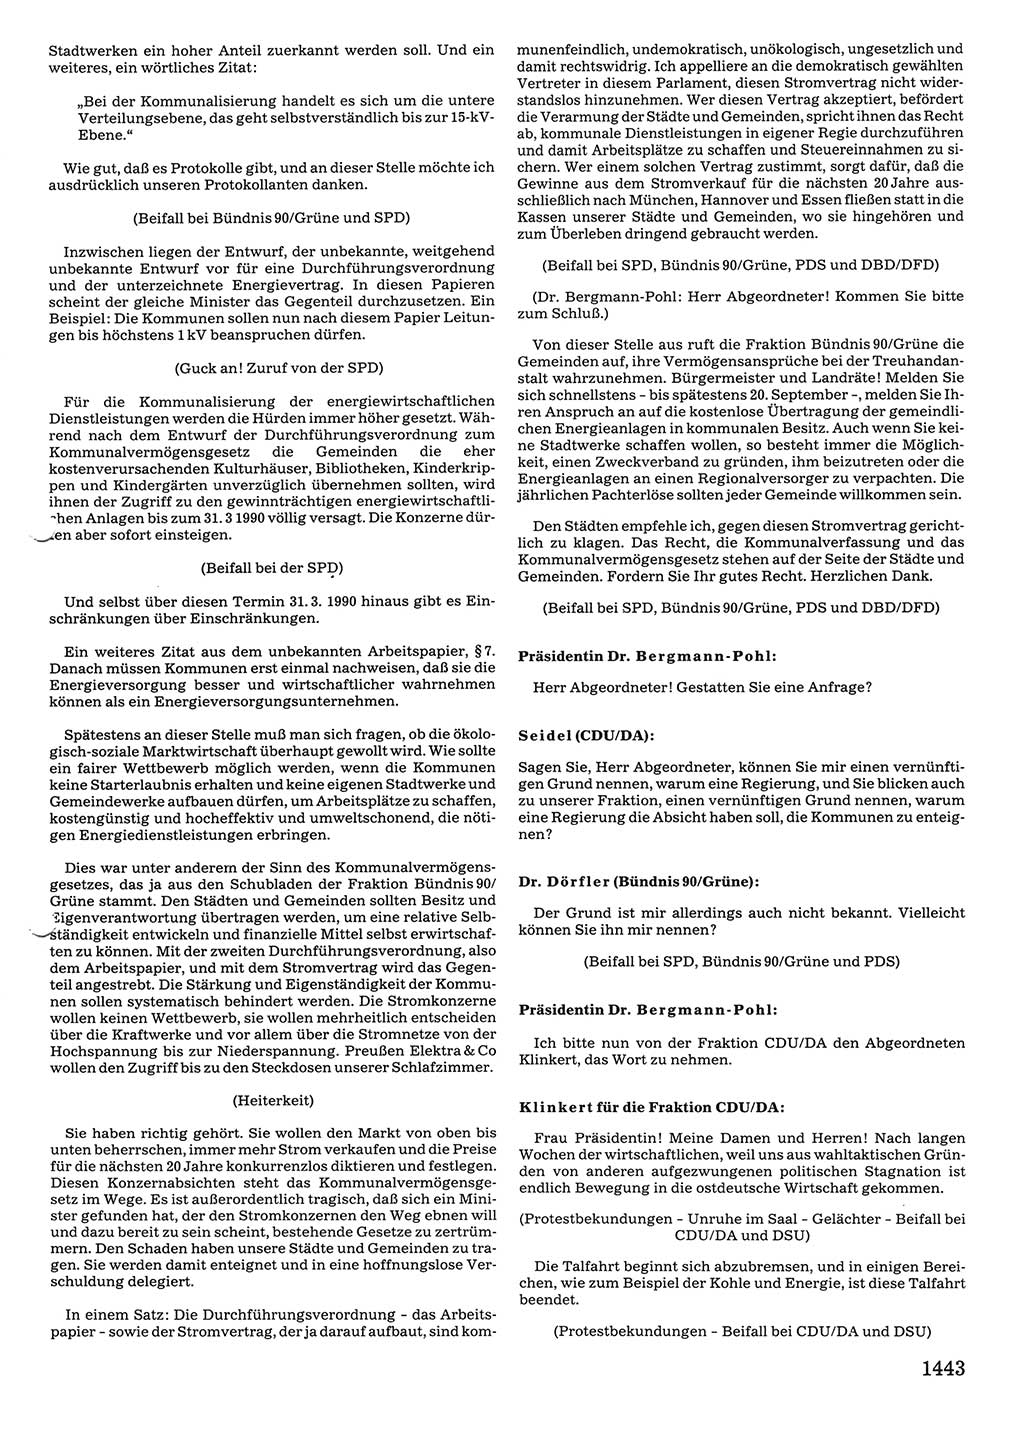 Tagungen der Volkskammer (VK) der Deutschen Demokratischen Republik (DDR), 10. Wahlperiode 1990, Seite 1443 (VK. DDR 10. WP. 1990, Prot. Tg. 1-38, 5.4.-2.10.1990, S. 1443)